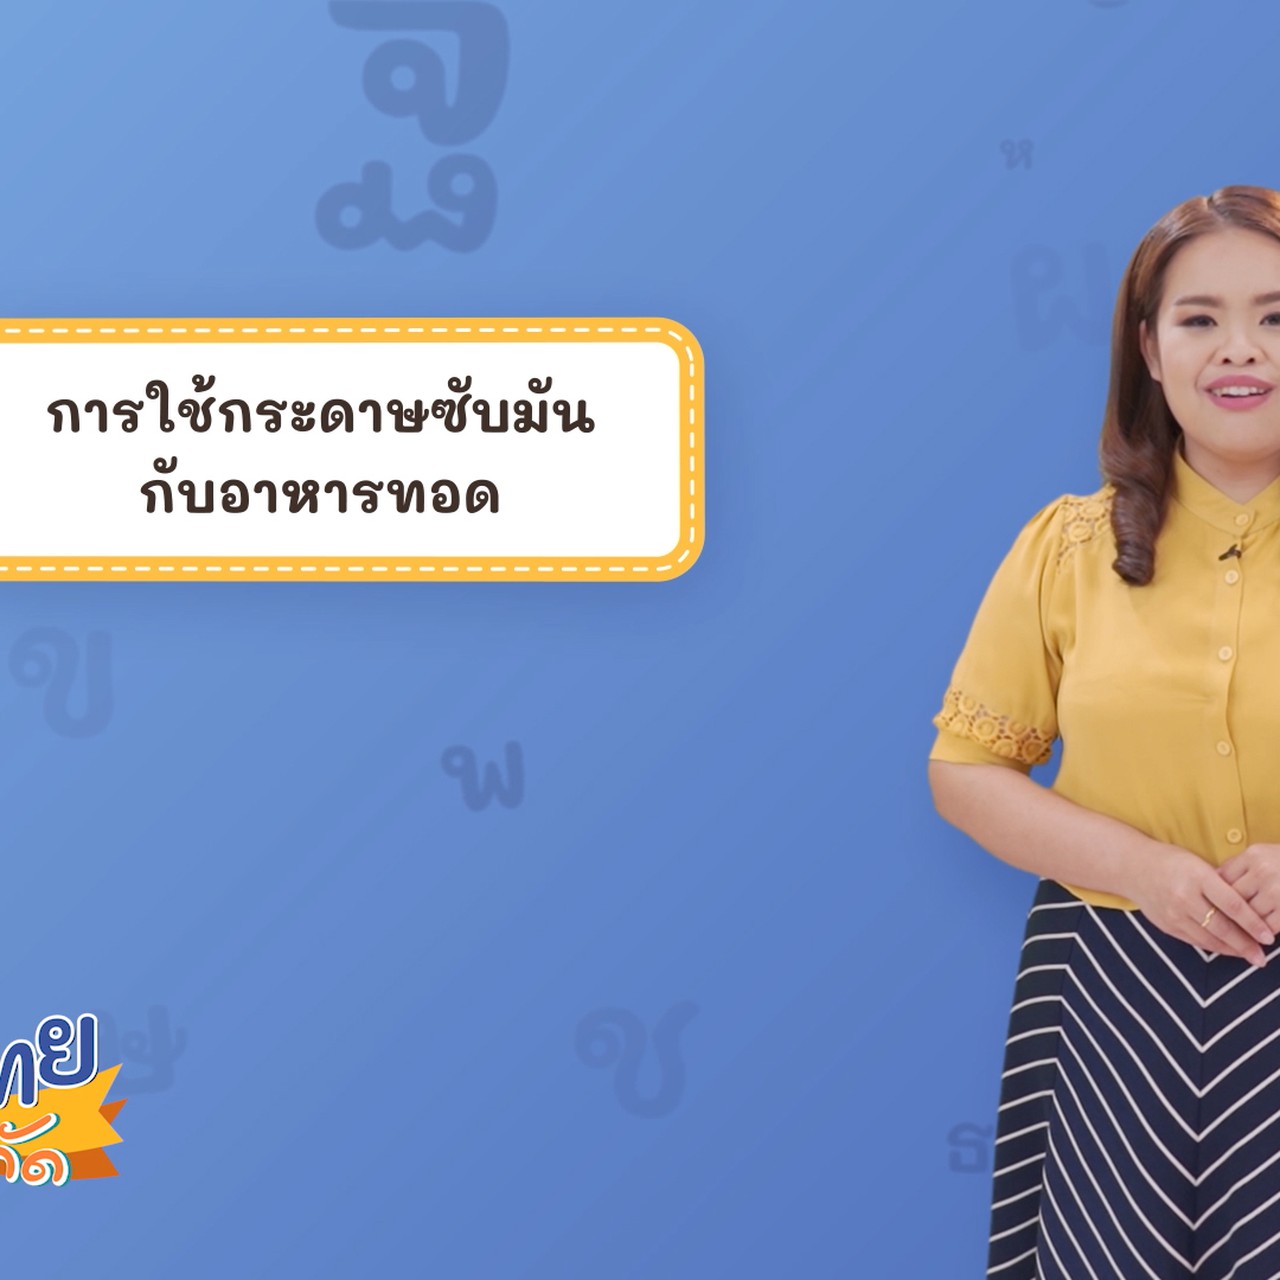 Thai-640529-1